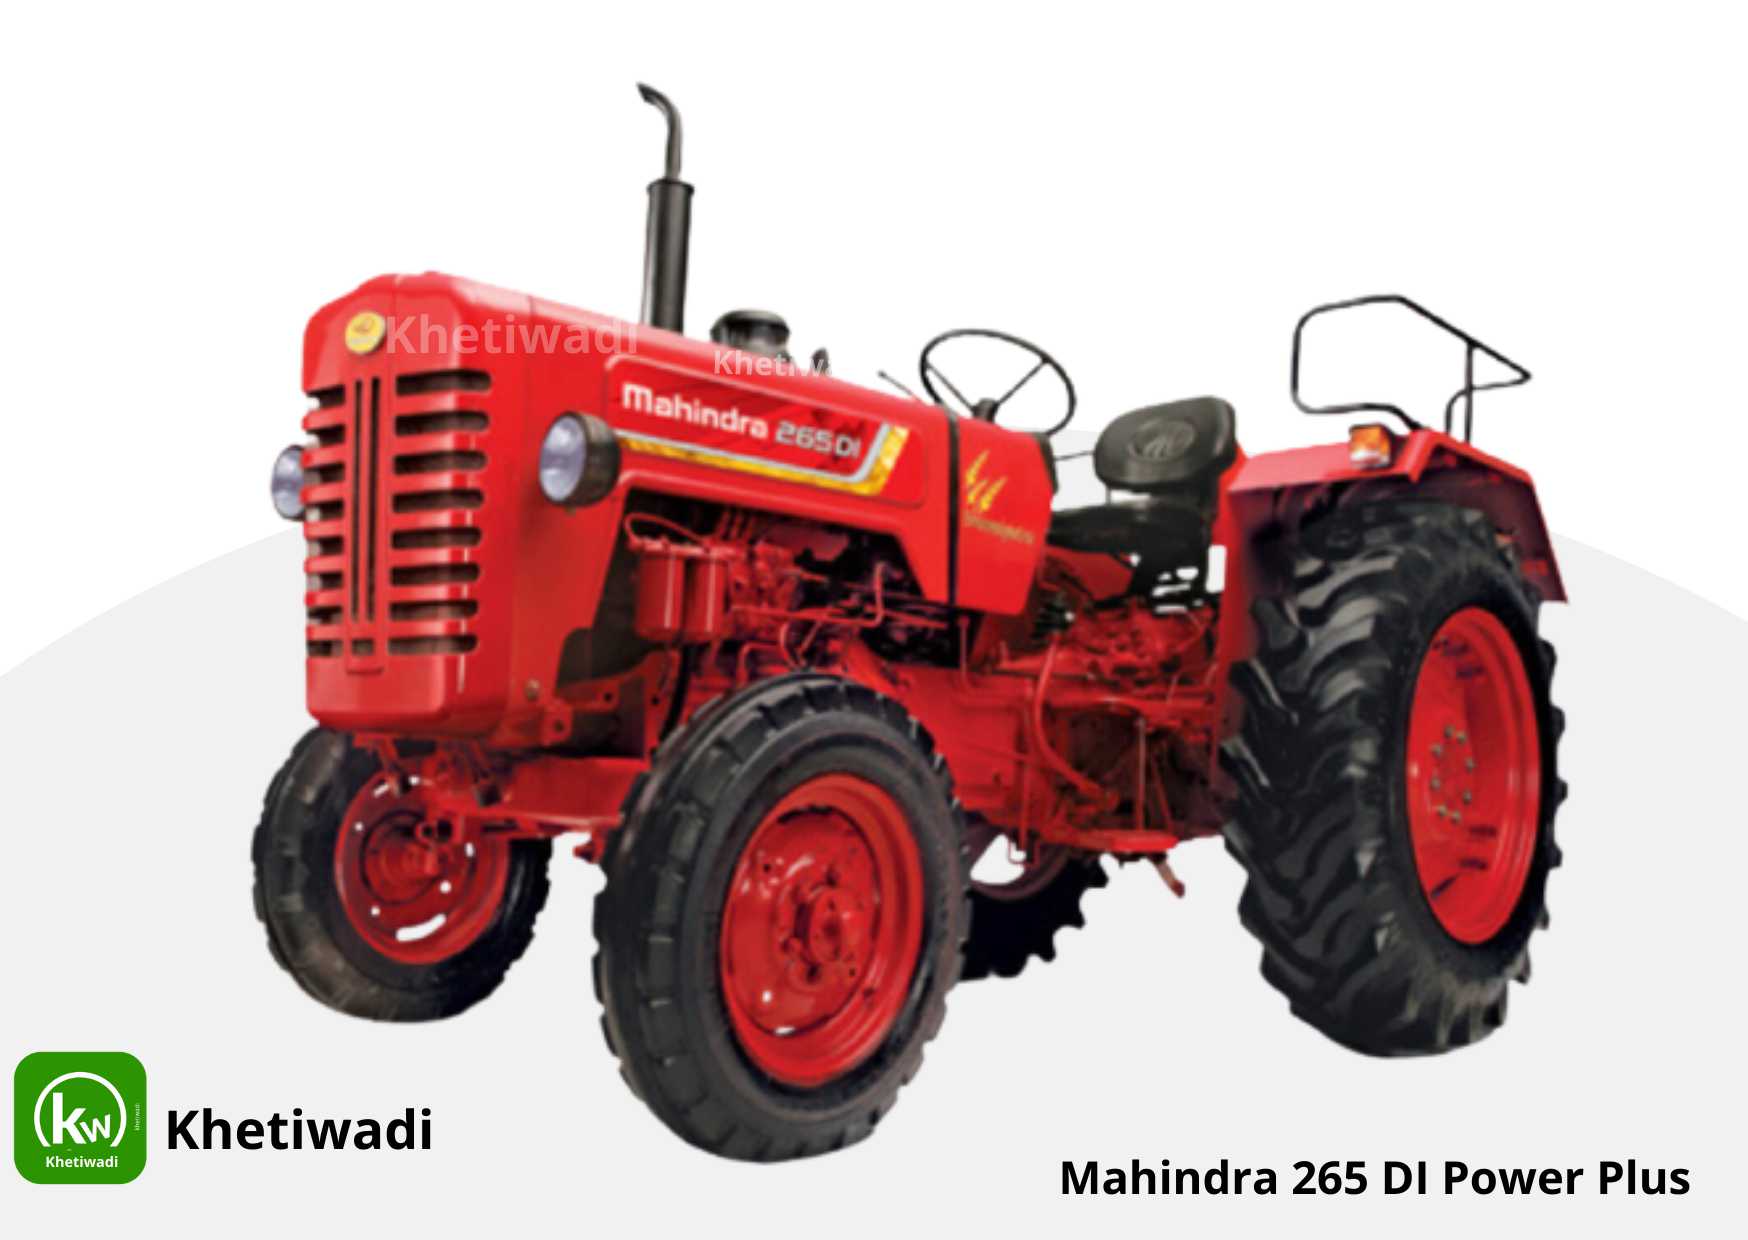 Mahindra 265 DI Power Plus full detail